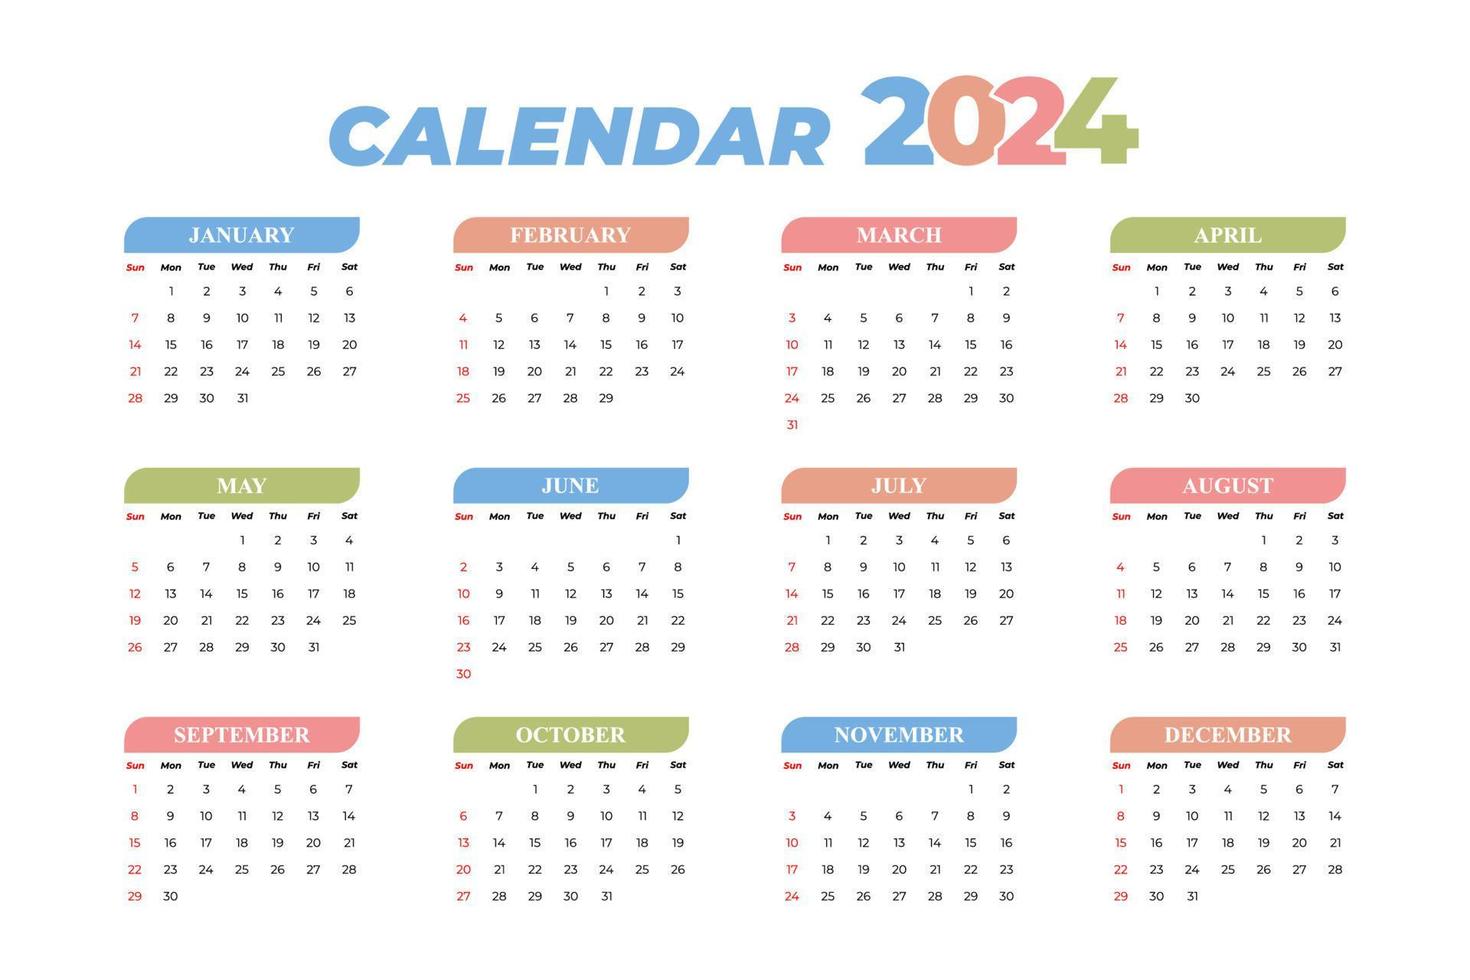 2024 kalender mall, redigerbar vektor